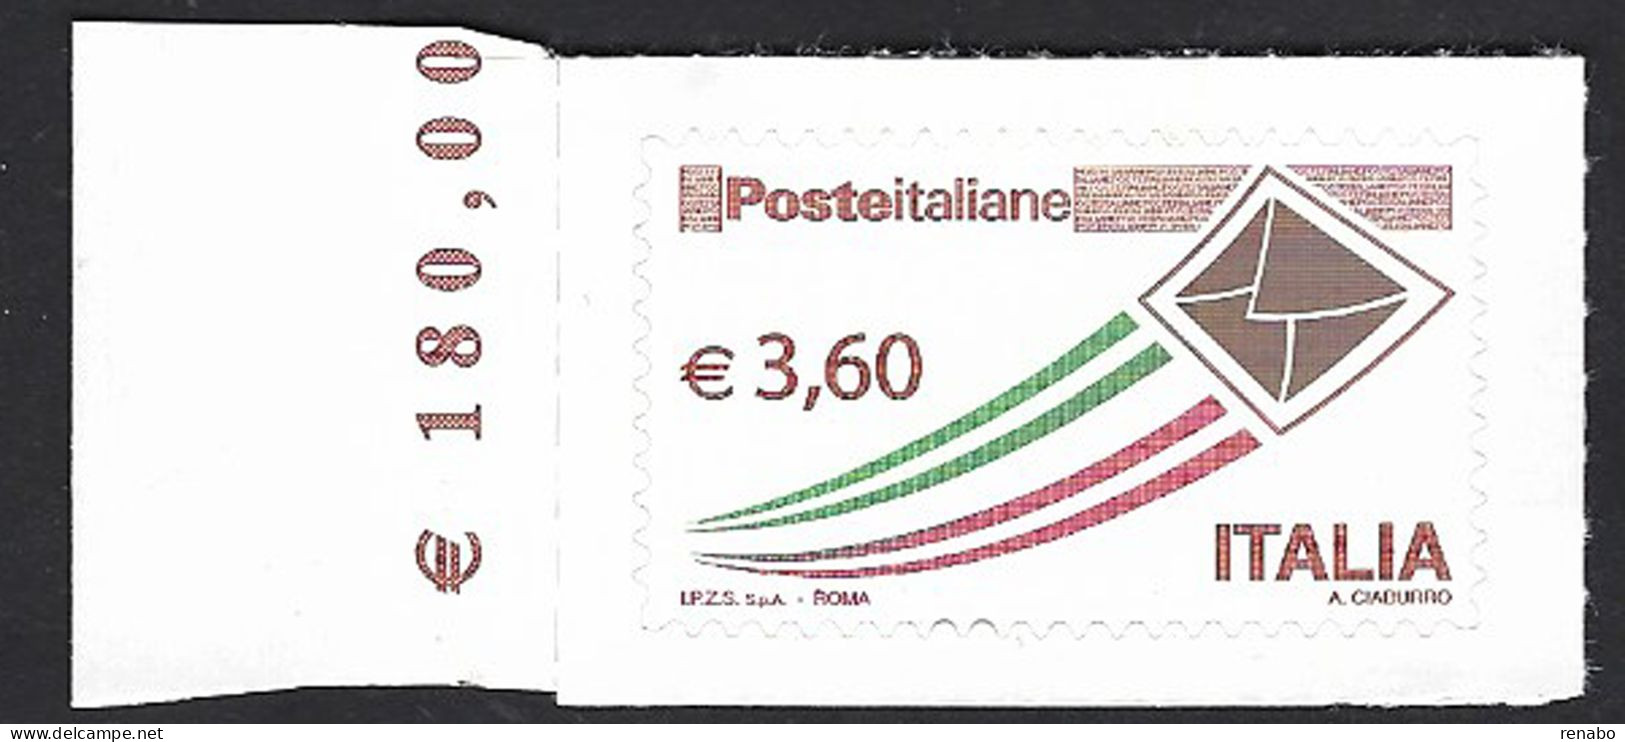 Italia 2013; Posta Italiana Busta Che Vola Da € 3,60 ; Bordo Sinistro. - 2011-20:  Nuovi